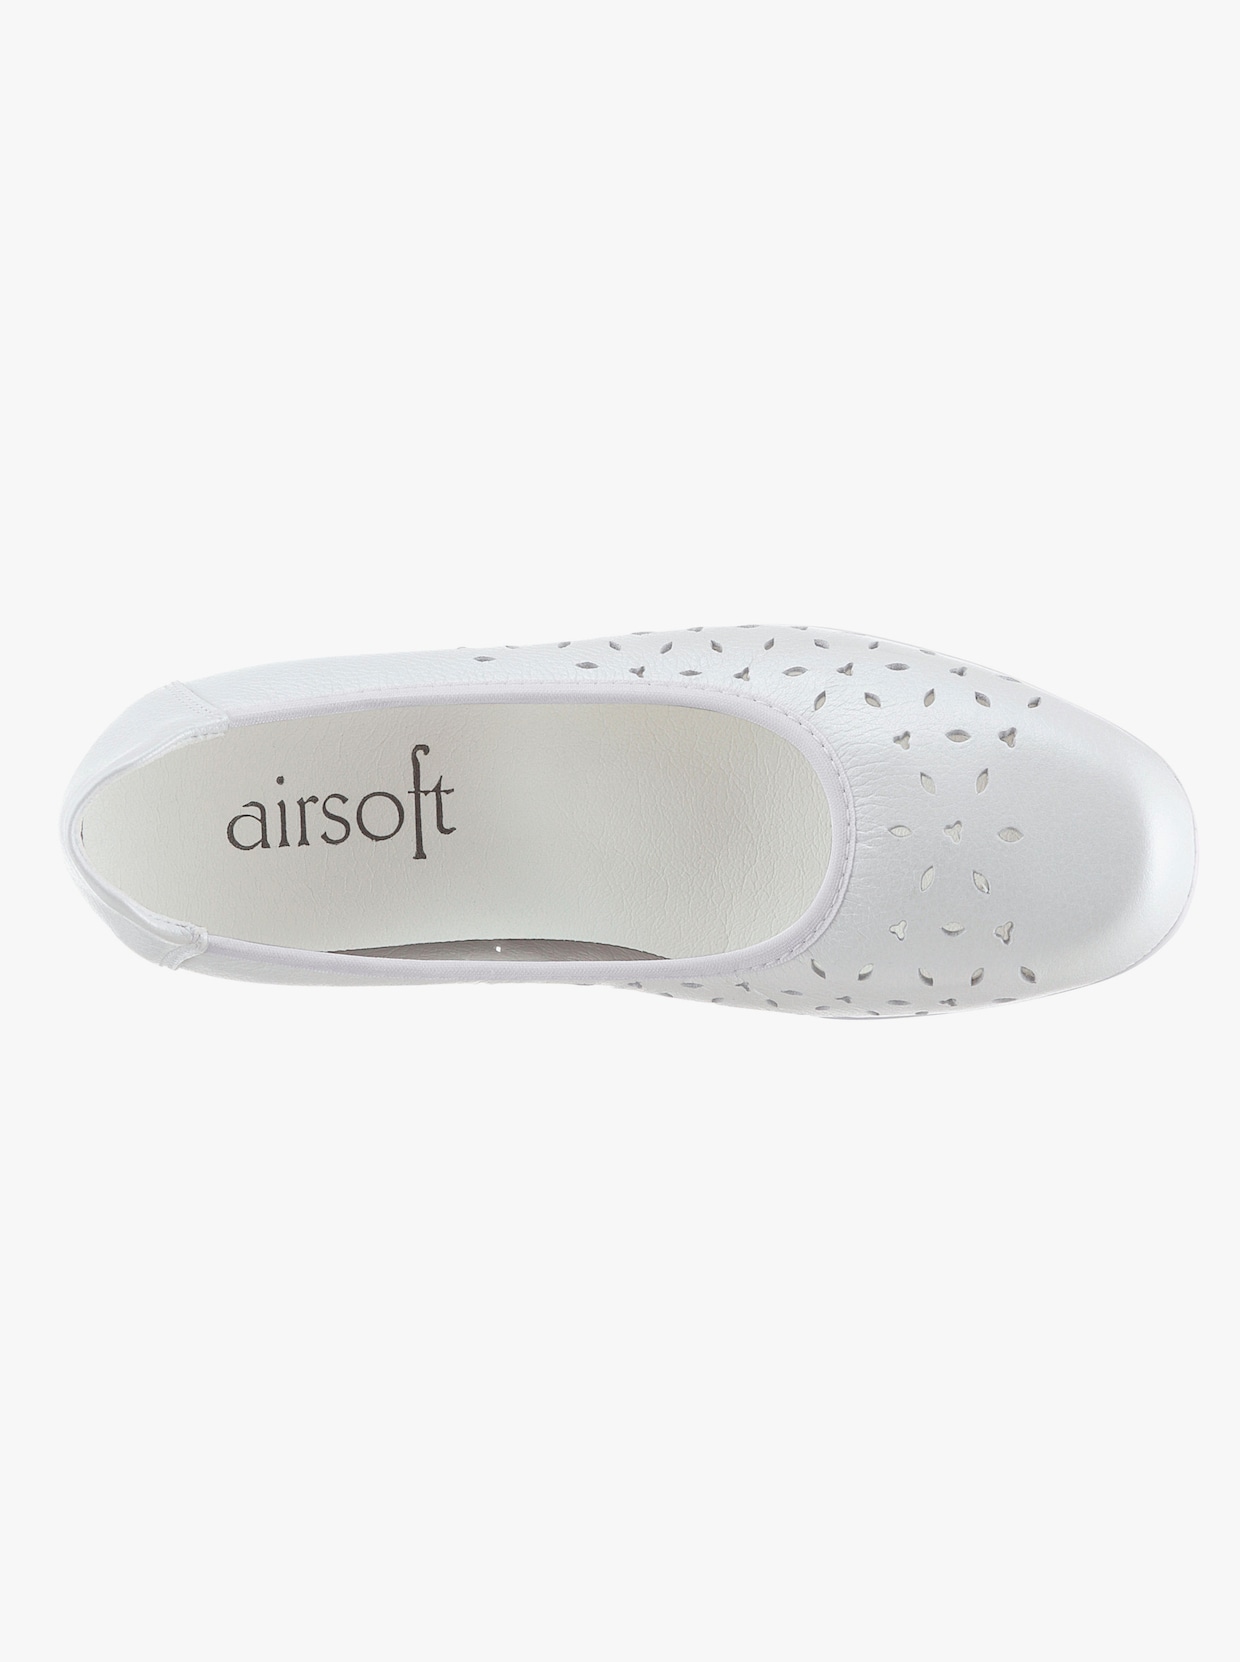 airsoft comfort+ Ballerina - weiß